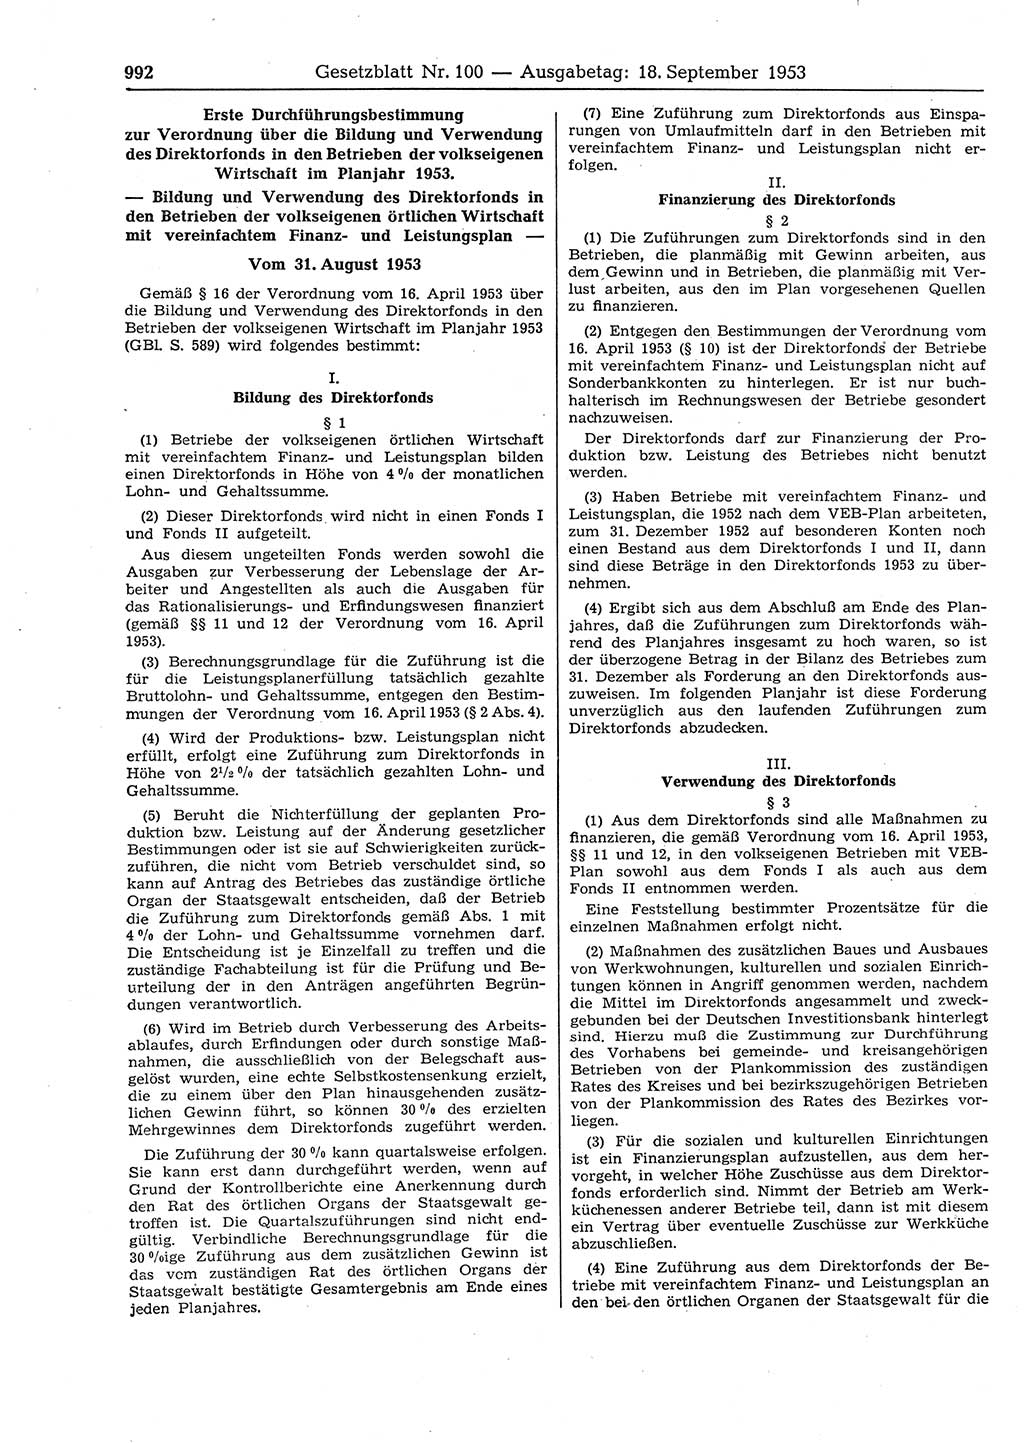 Gesetzblatt (GBl.) der Deutschen Demokratischen Republik (DDR) 1953, Seite 992 (GBl. DDR 1953, S. 992)